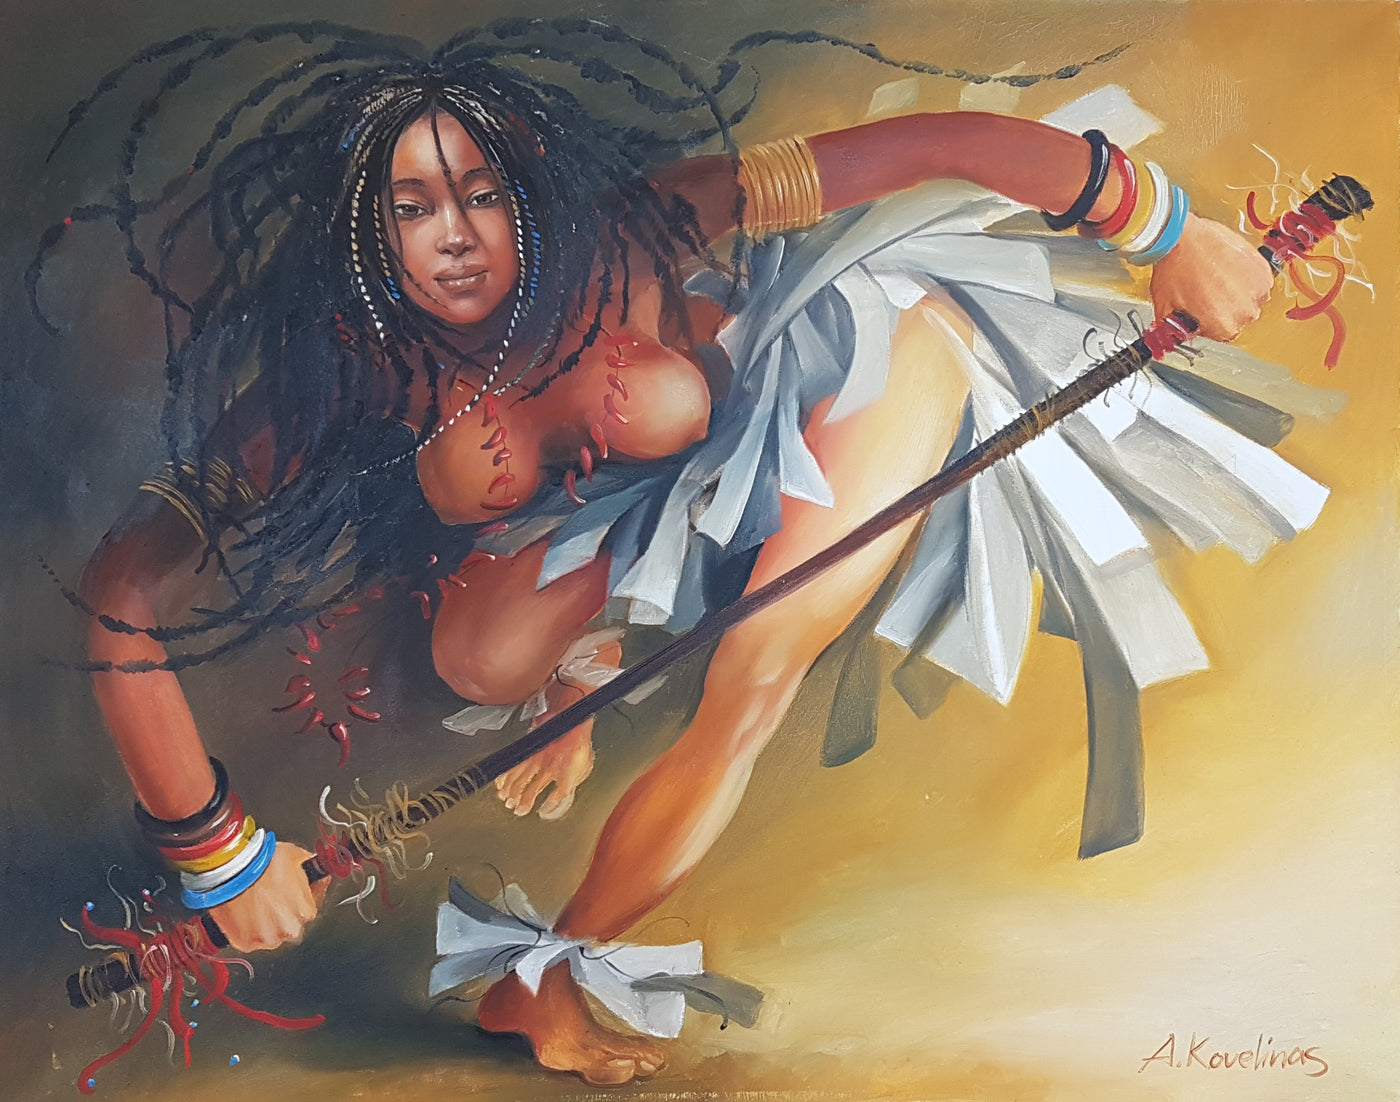 Tribal Dancer